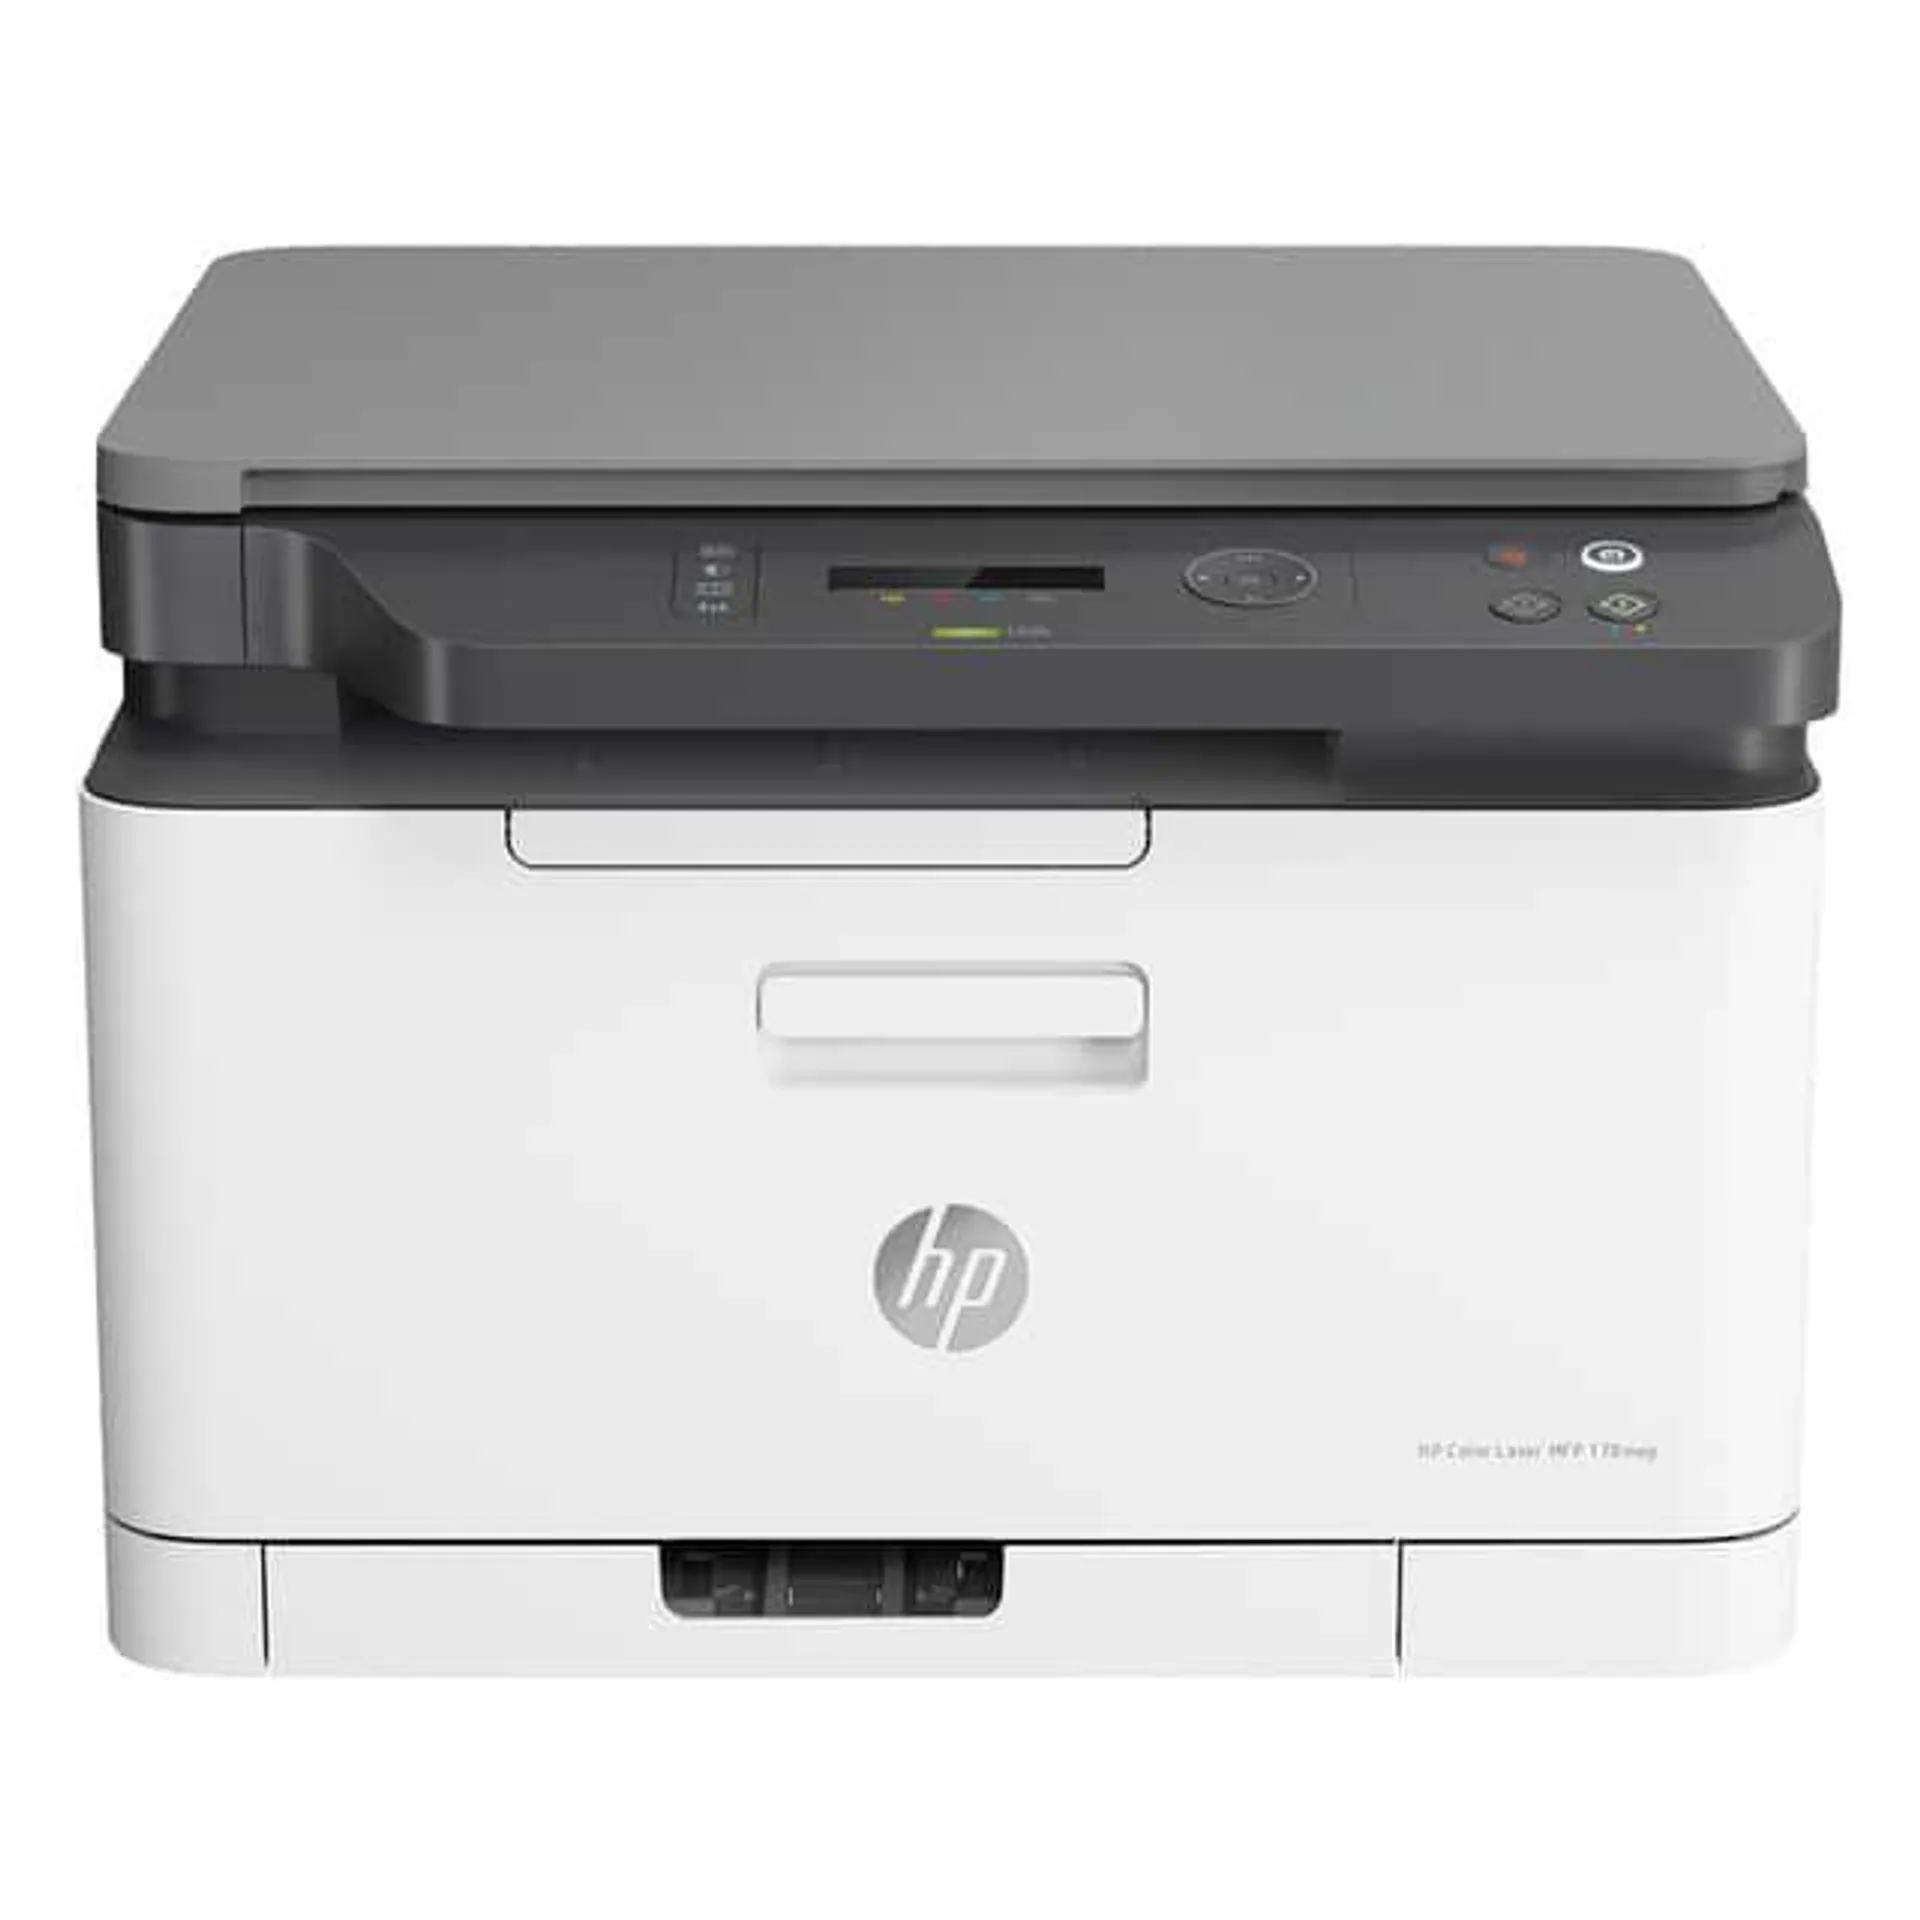 Impresora láser multifunción color HP Color Laser 178nw, Wi-fi, copia, escanea